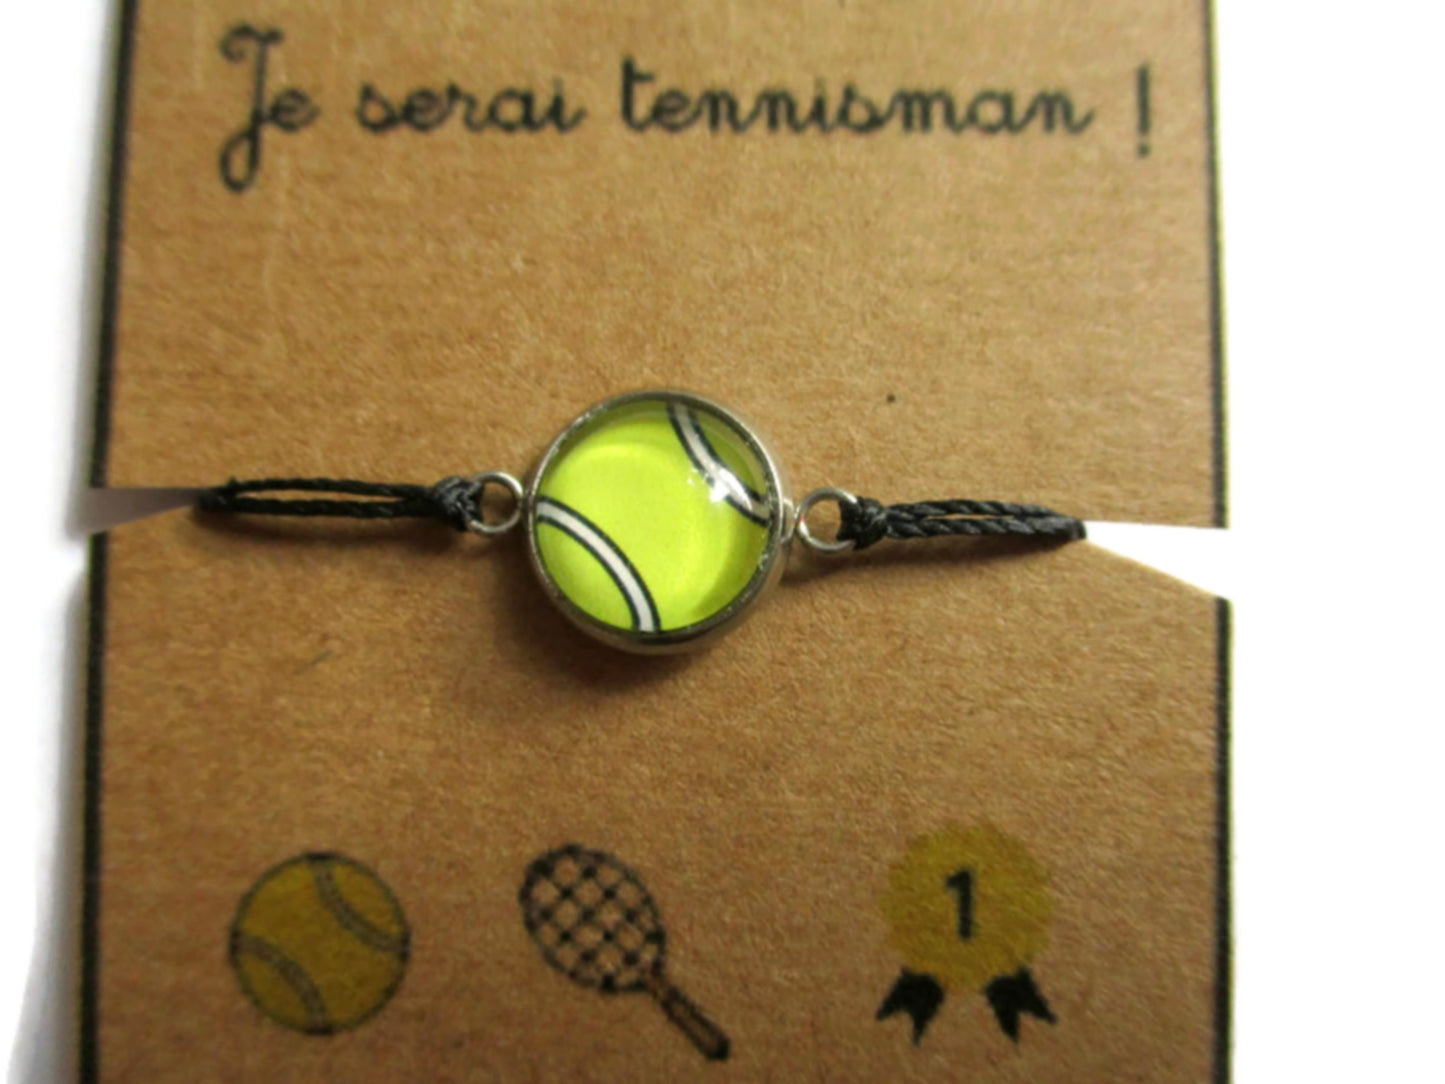 Wish Tennis Bracelet, Quand je serai grand je serai tennisman